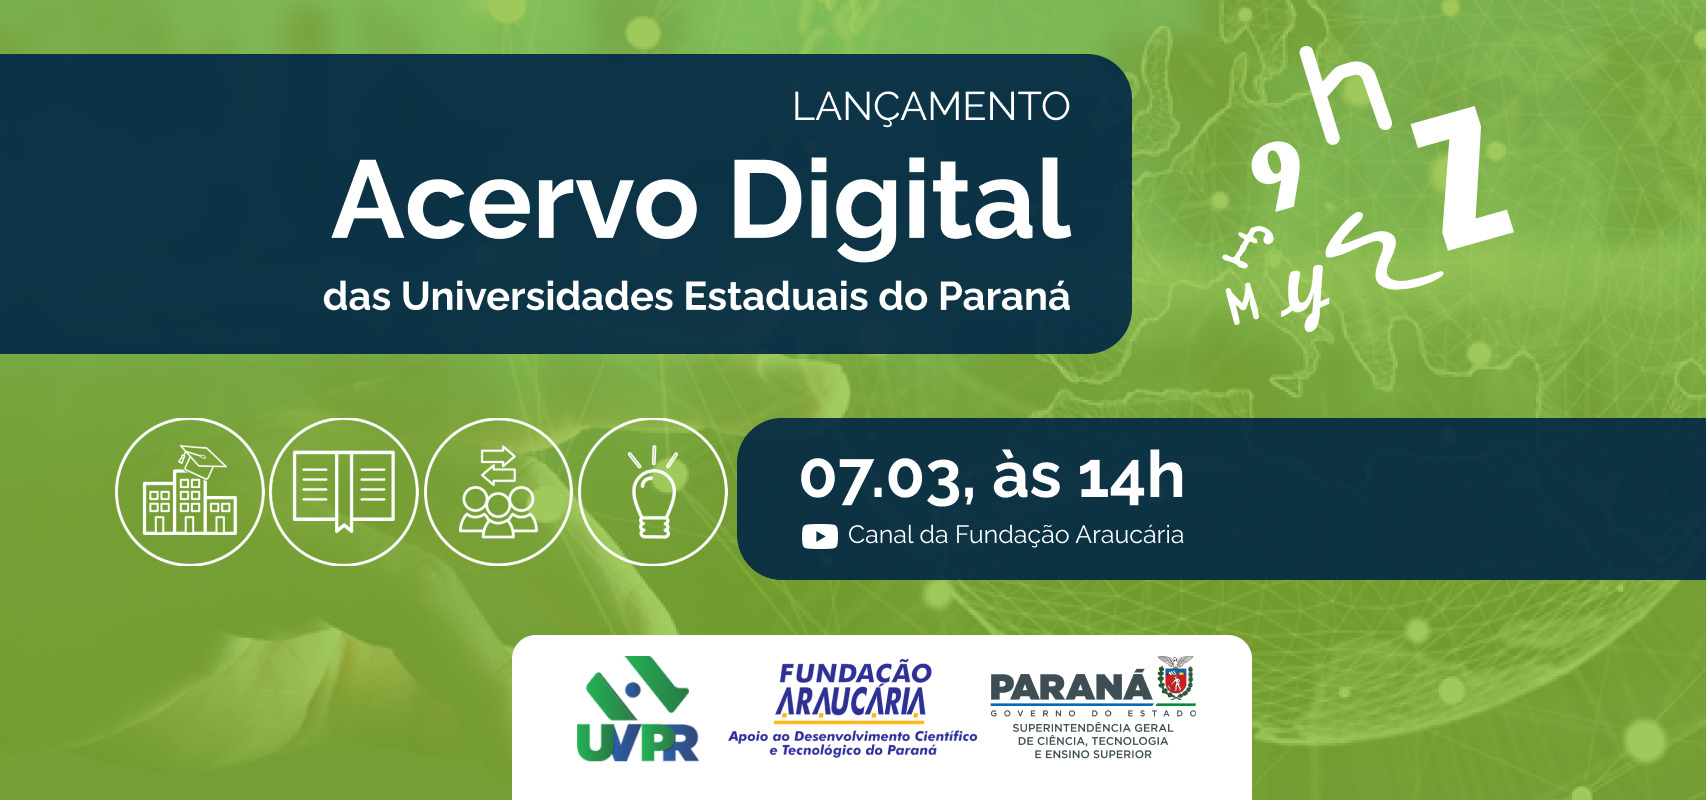 Universidades Estaduais do Paraná passam a contar com amplo acervo bibliográfico digital